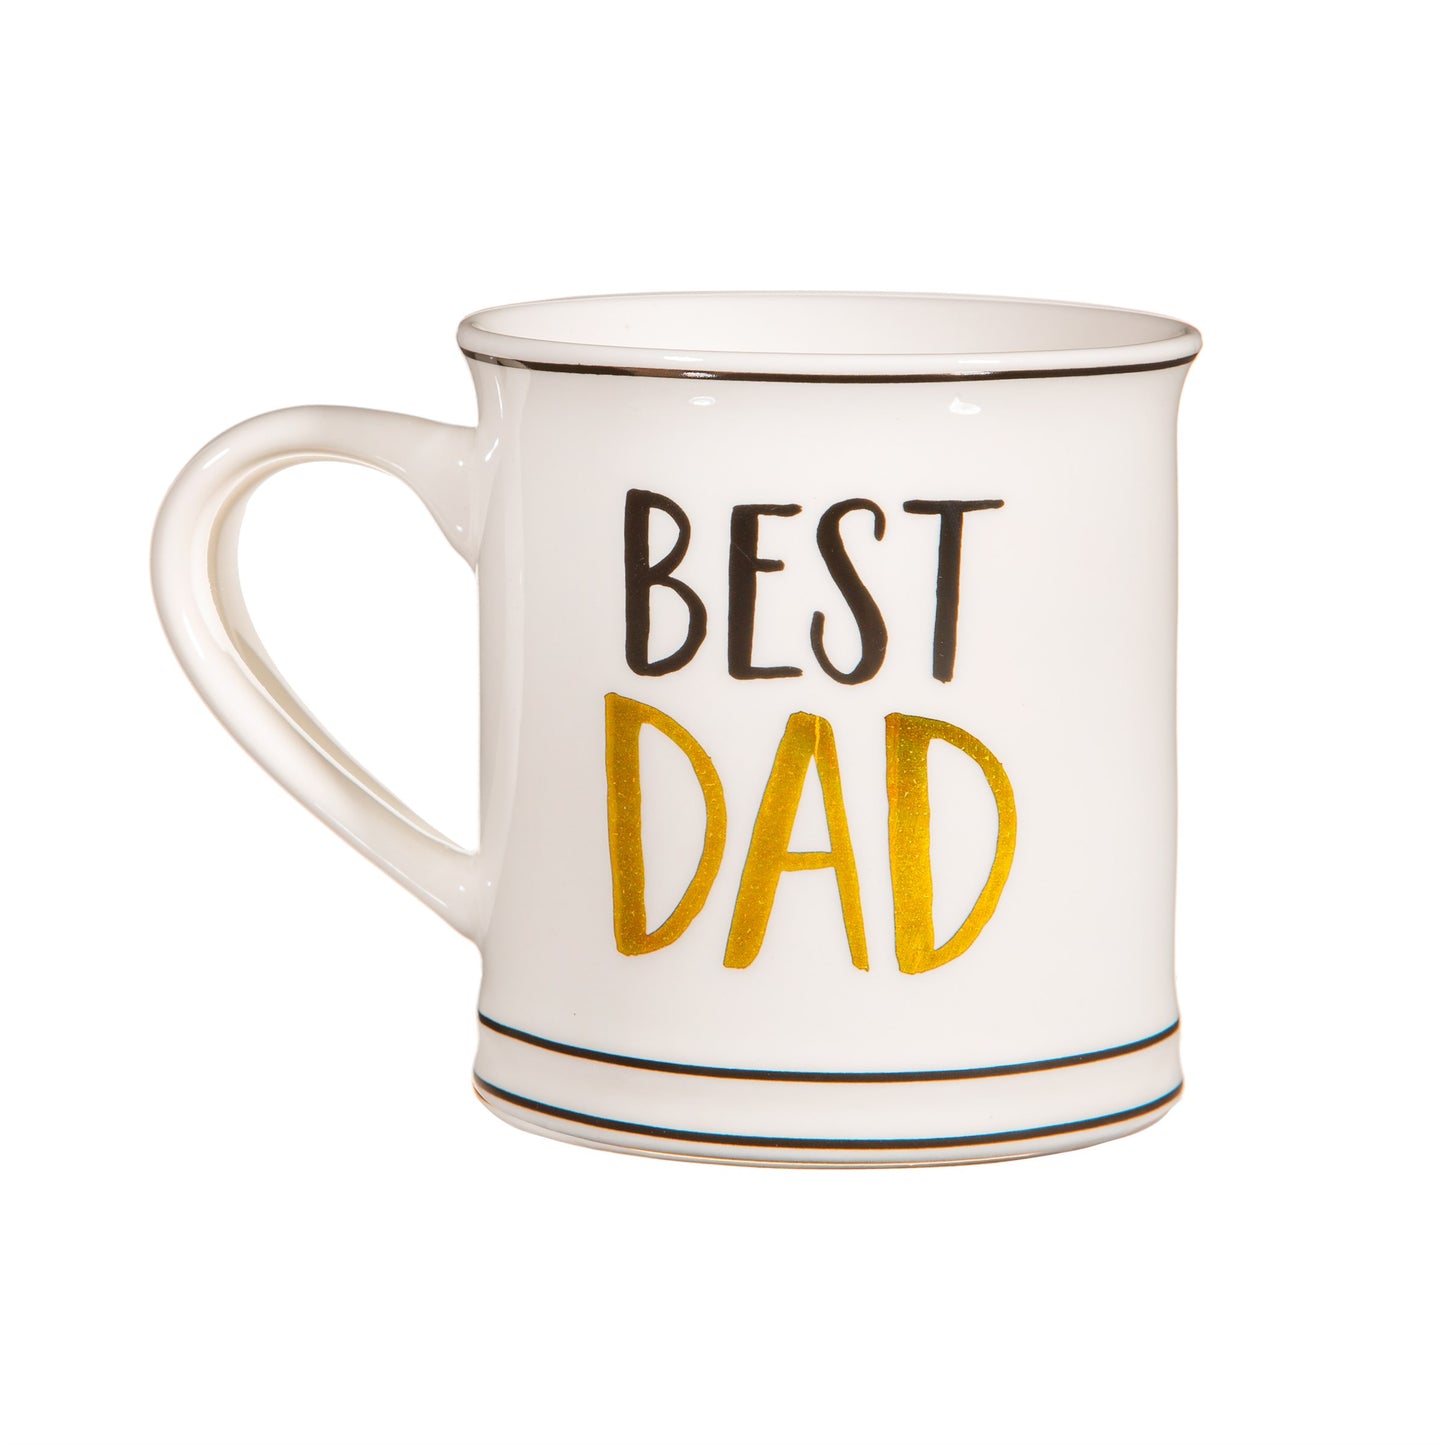 Best Dad Mug - Black & Gold